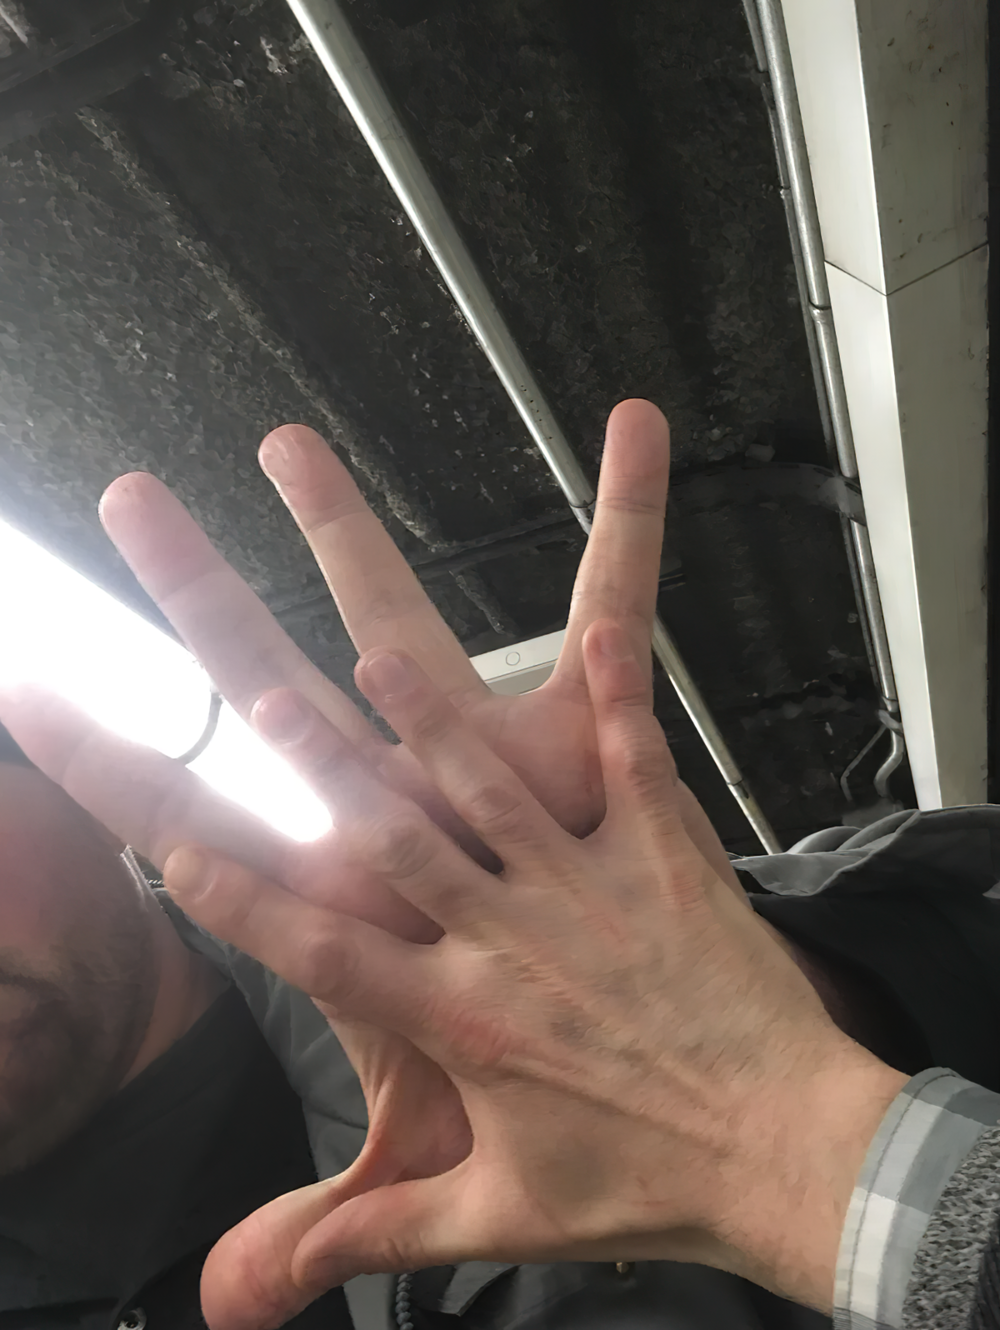 9. «Сегодня в метро я столкнулся с рекордсменом Гиннесса по самой большой руке: 13 дюймов (33,02 см) от большого пальца до мизинца, его зовут Большой Джерри»